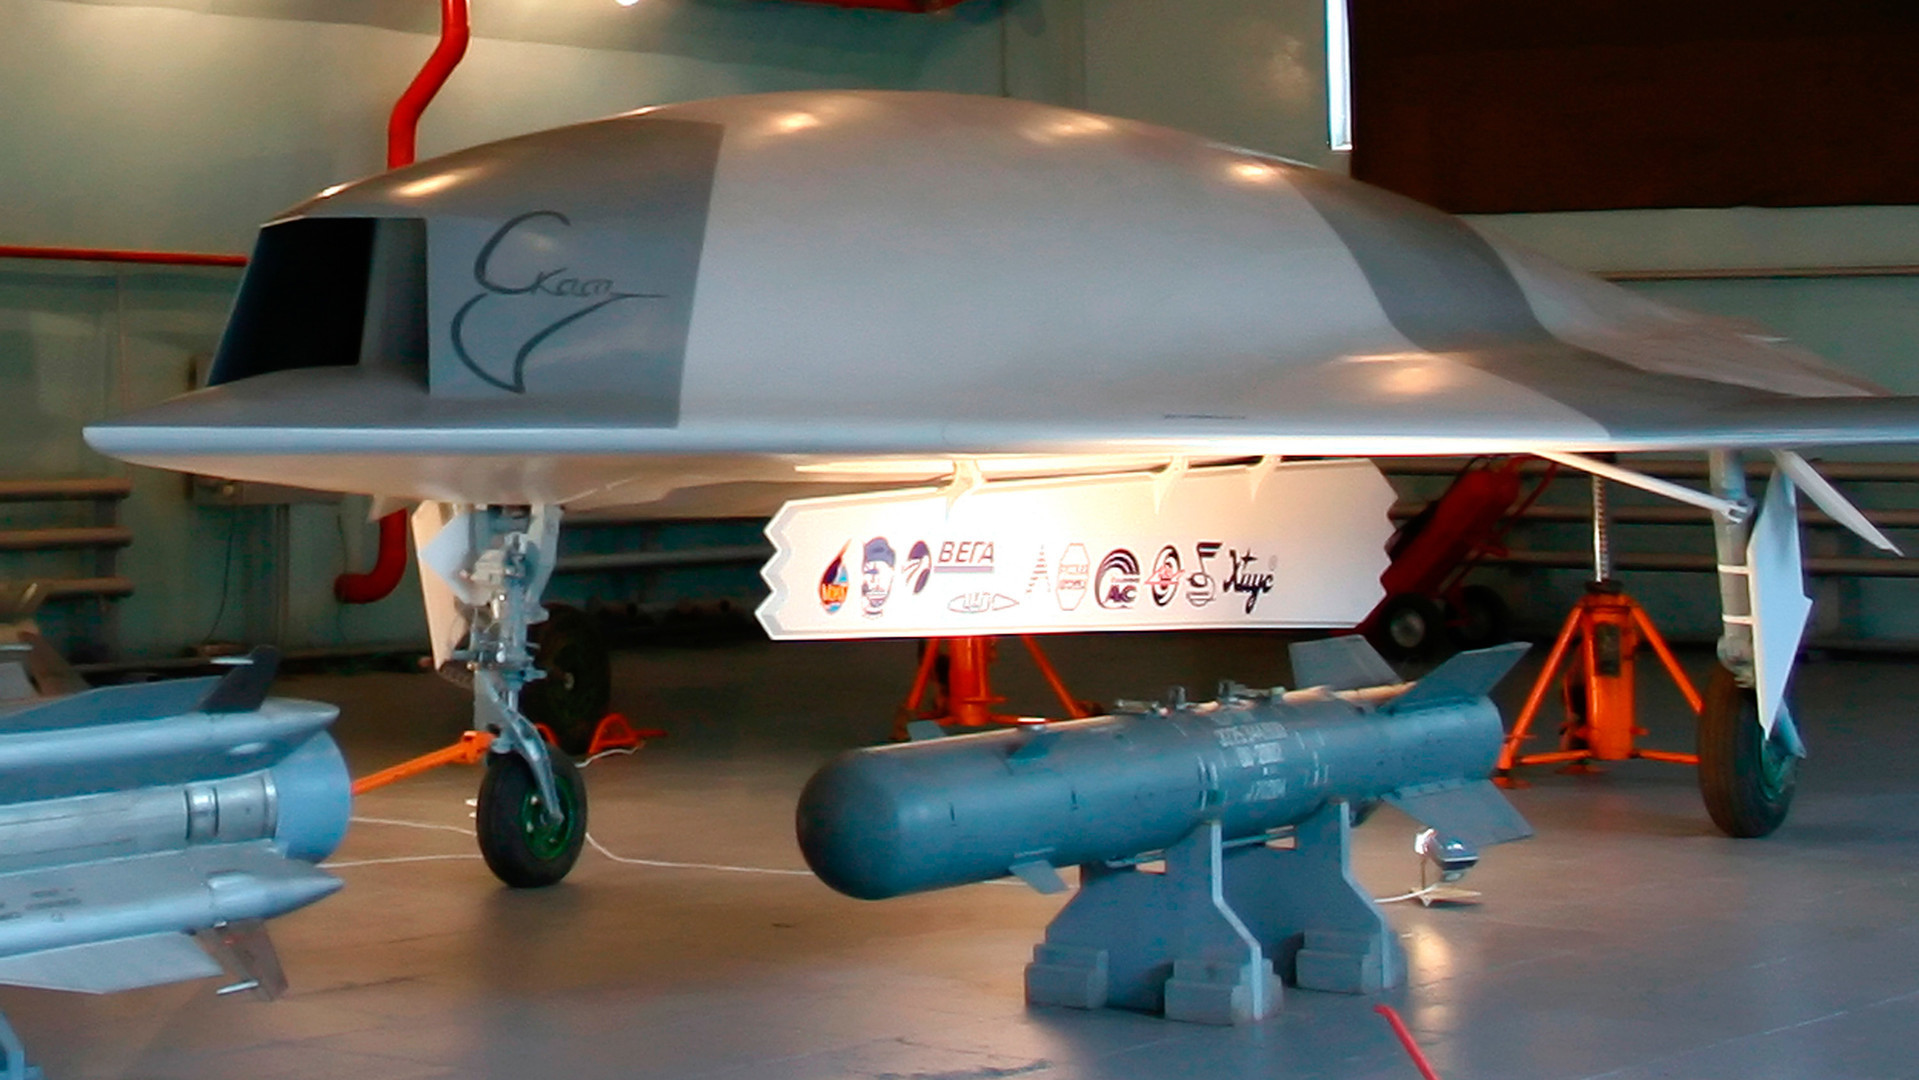 Modelo em tamanho real do veículo aéreo não tripulado Skat (ao fundo) e bombas aéreas (em primeiro plano) em um hangar da fábrica de aeronaves MiG